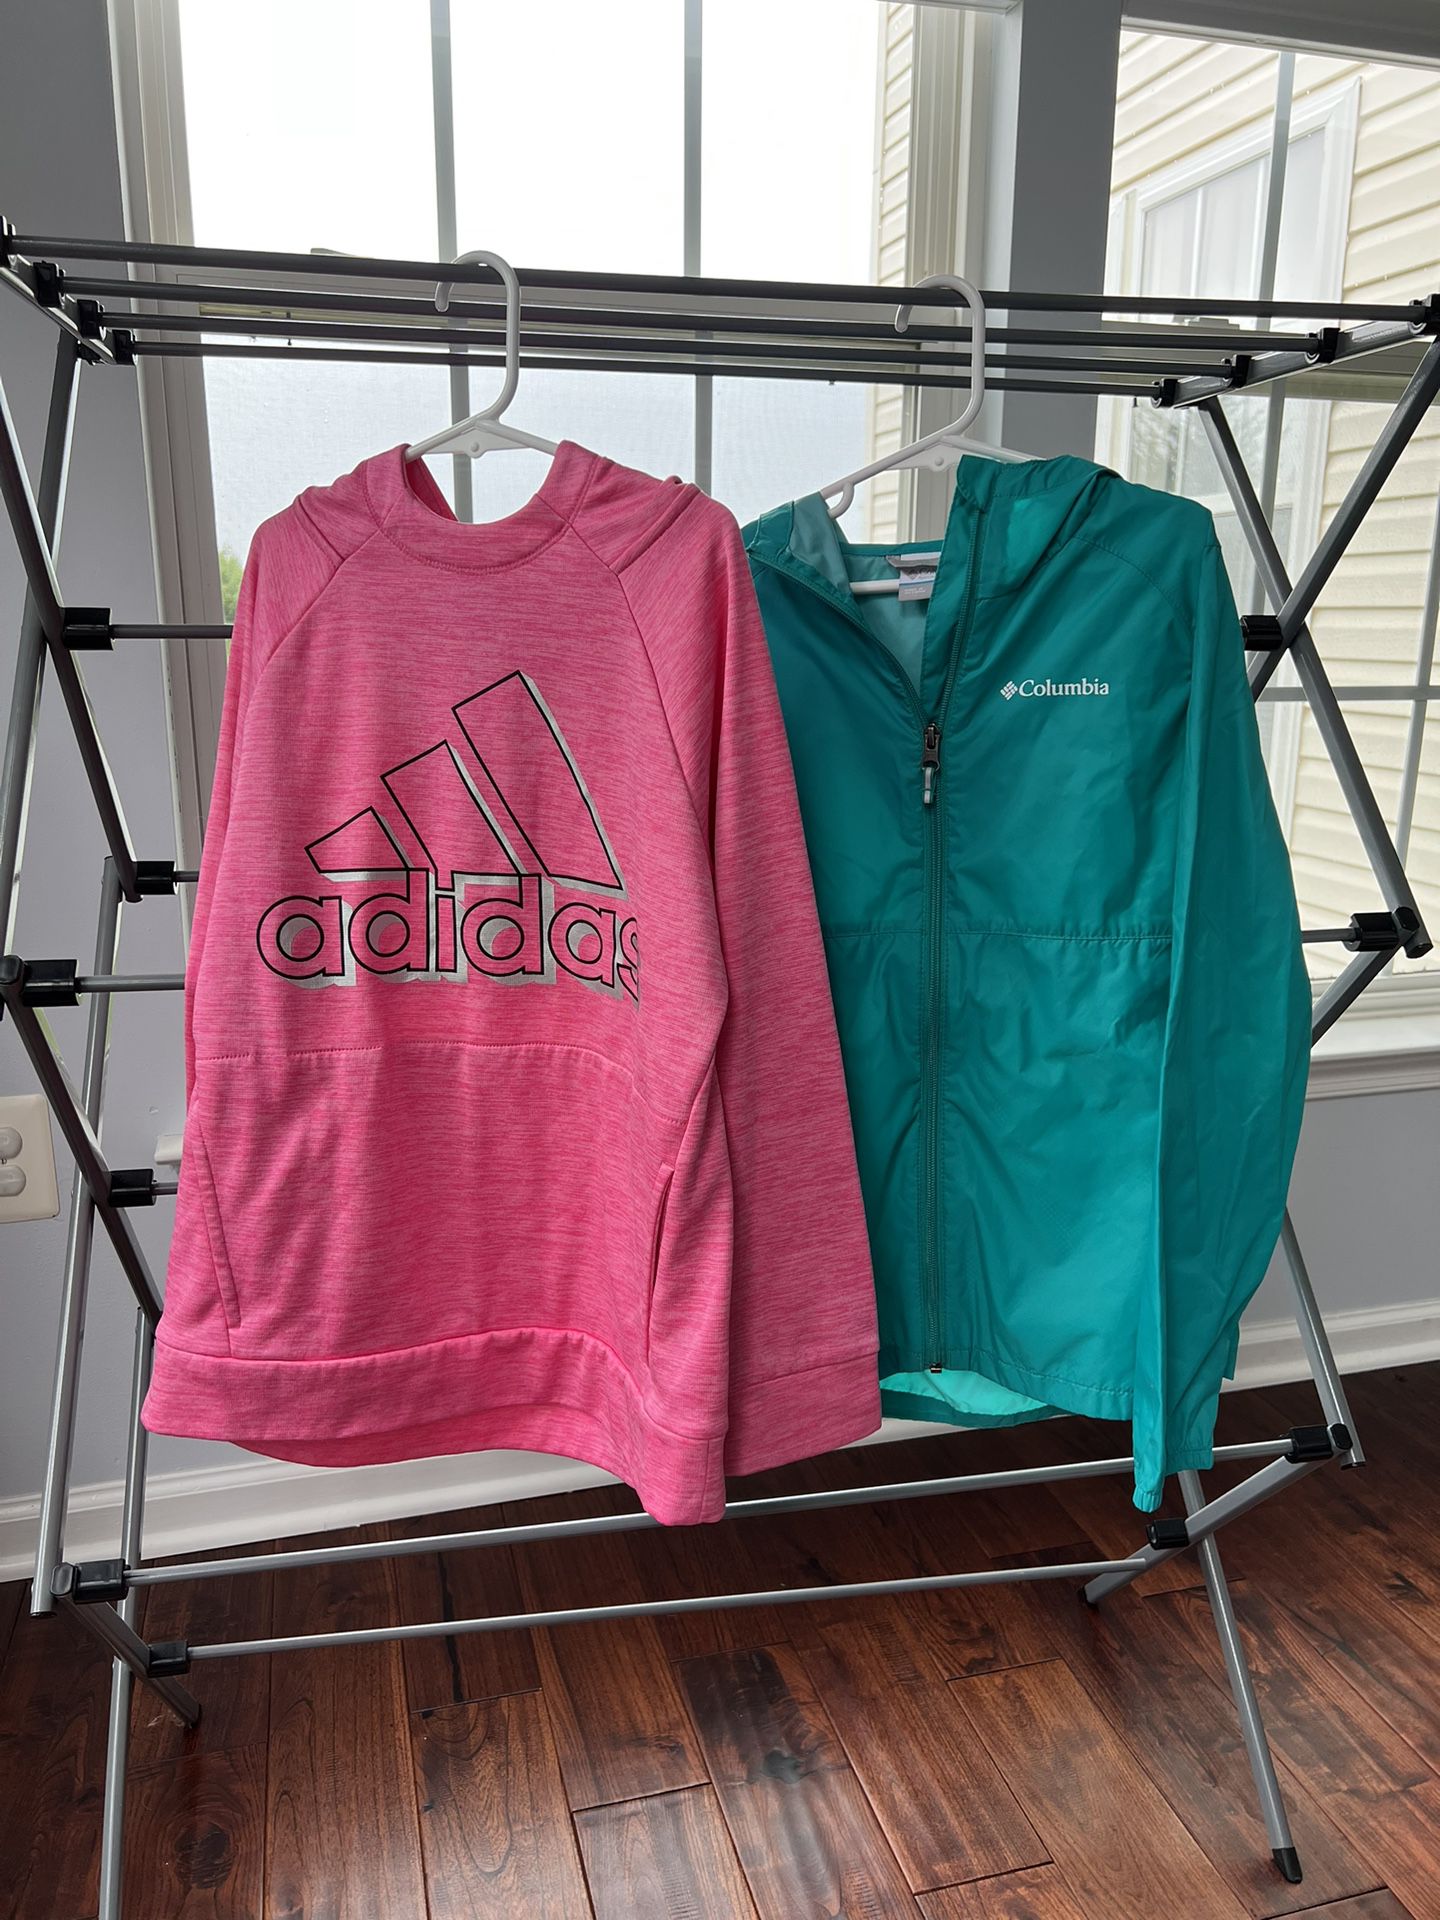 Girls Adidas Sweatshirt and Columbia Jacket, Size 10/12